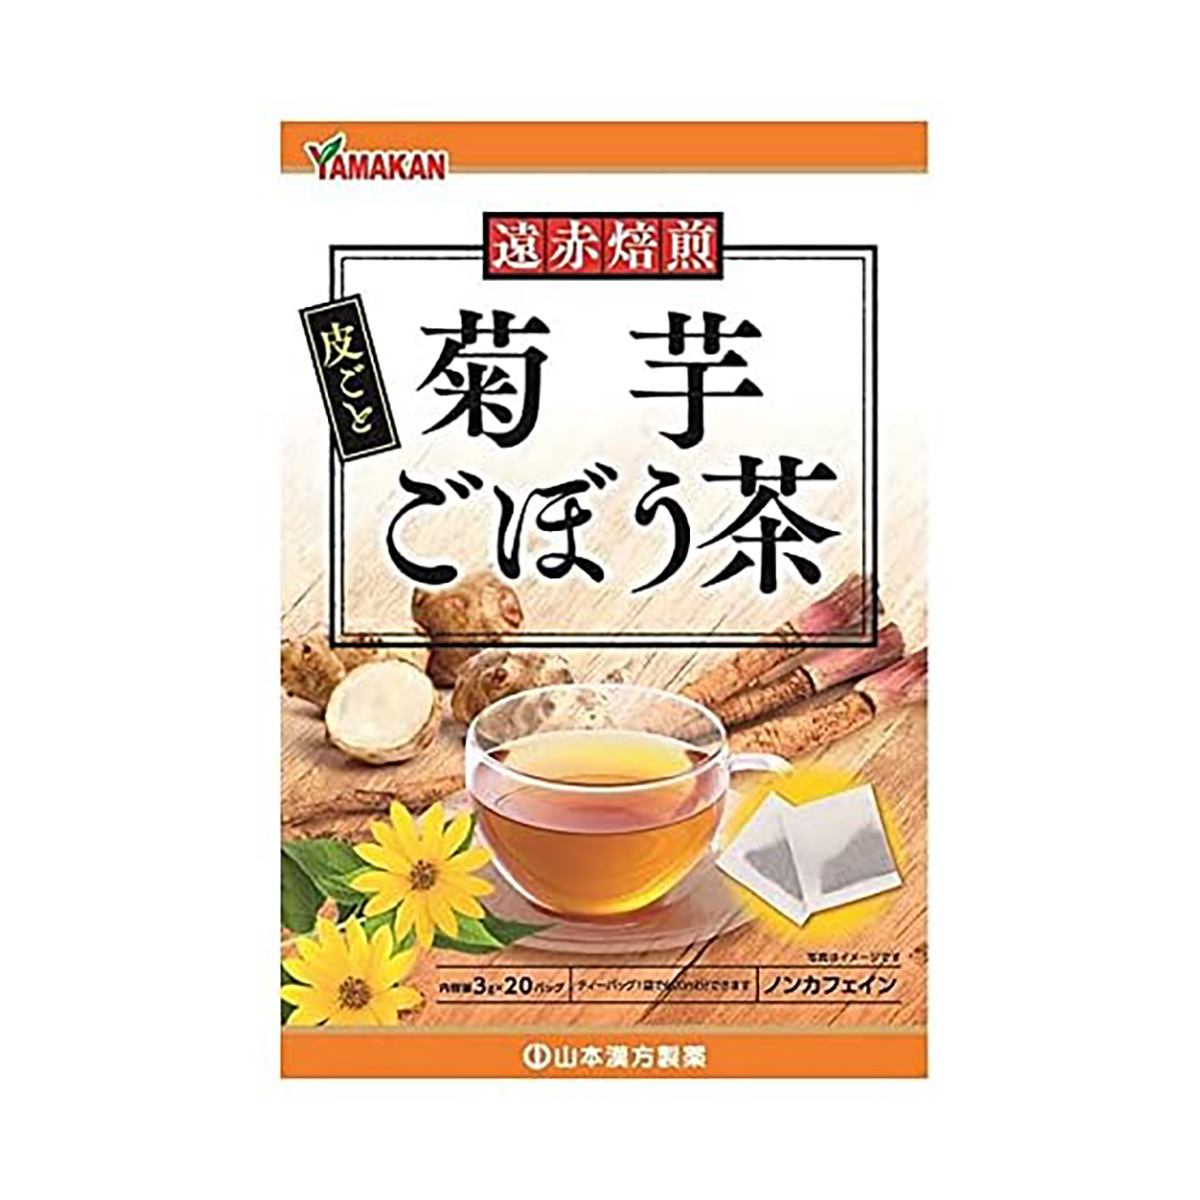 YamamotoKanpo Yamamoto Kampo藥品菊花burdock茶3G x 20包